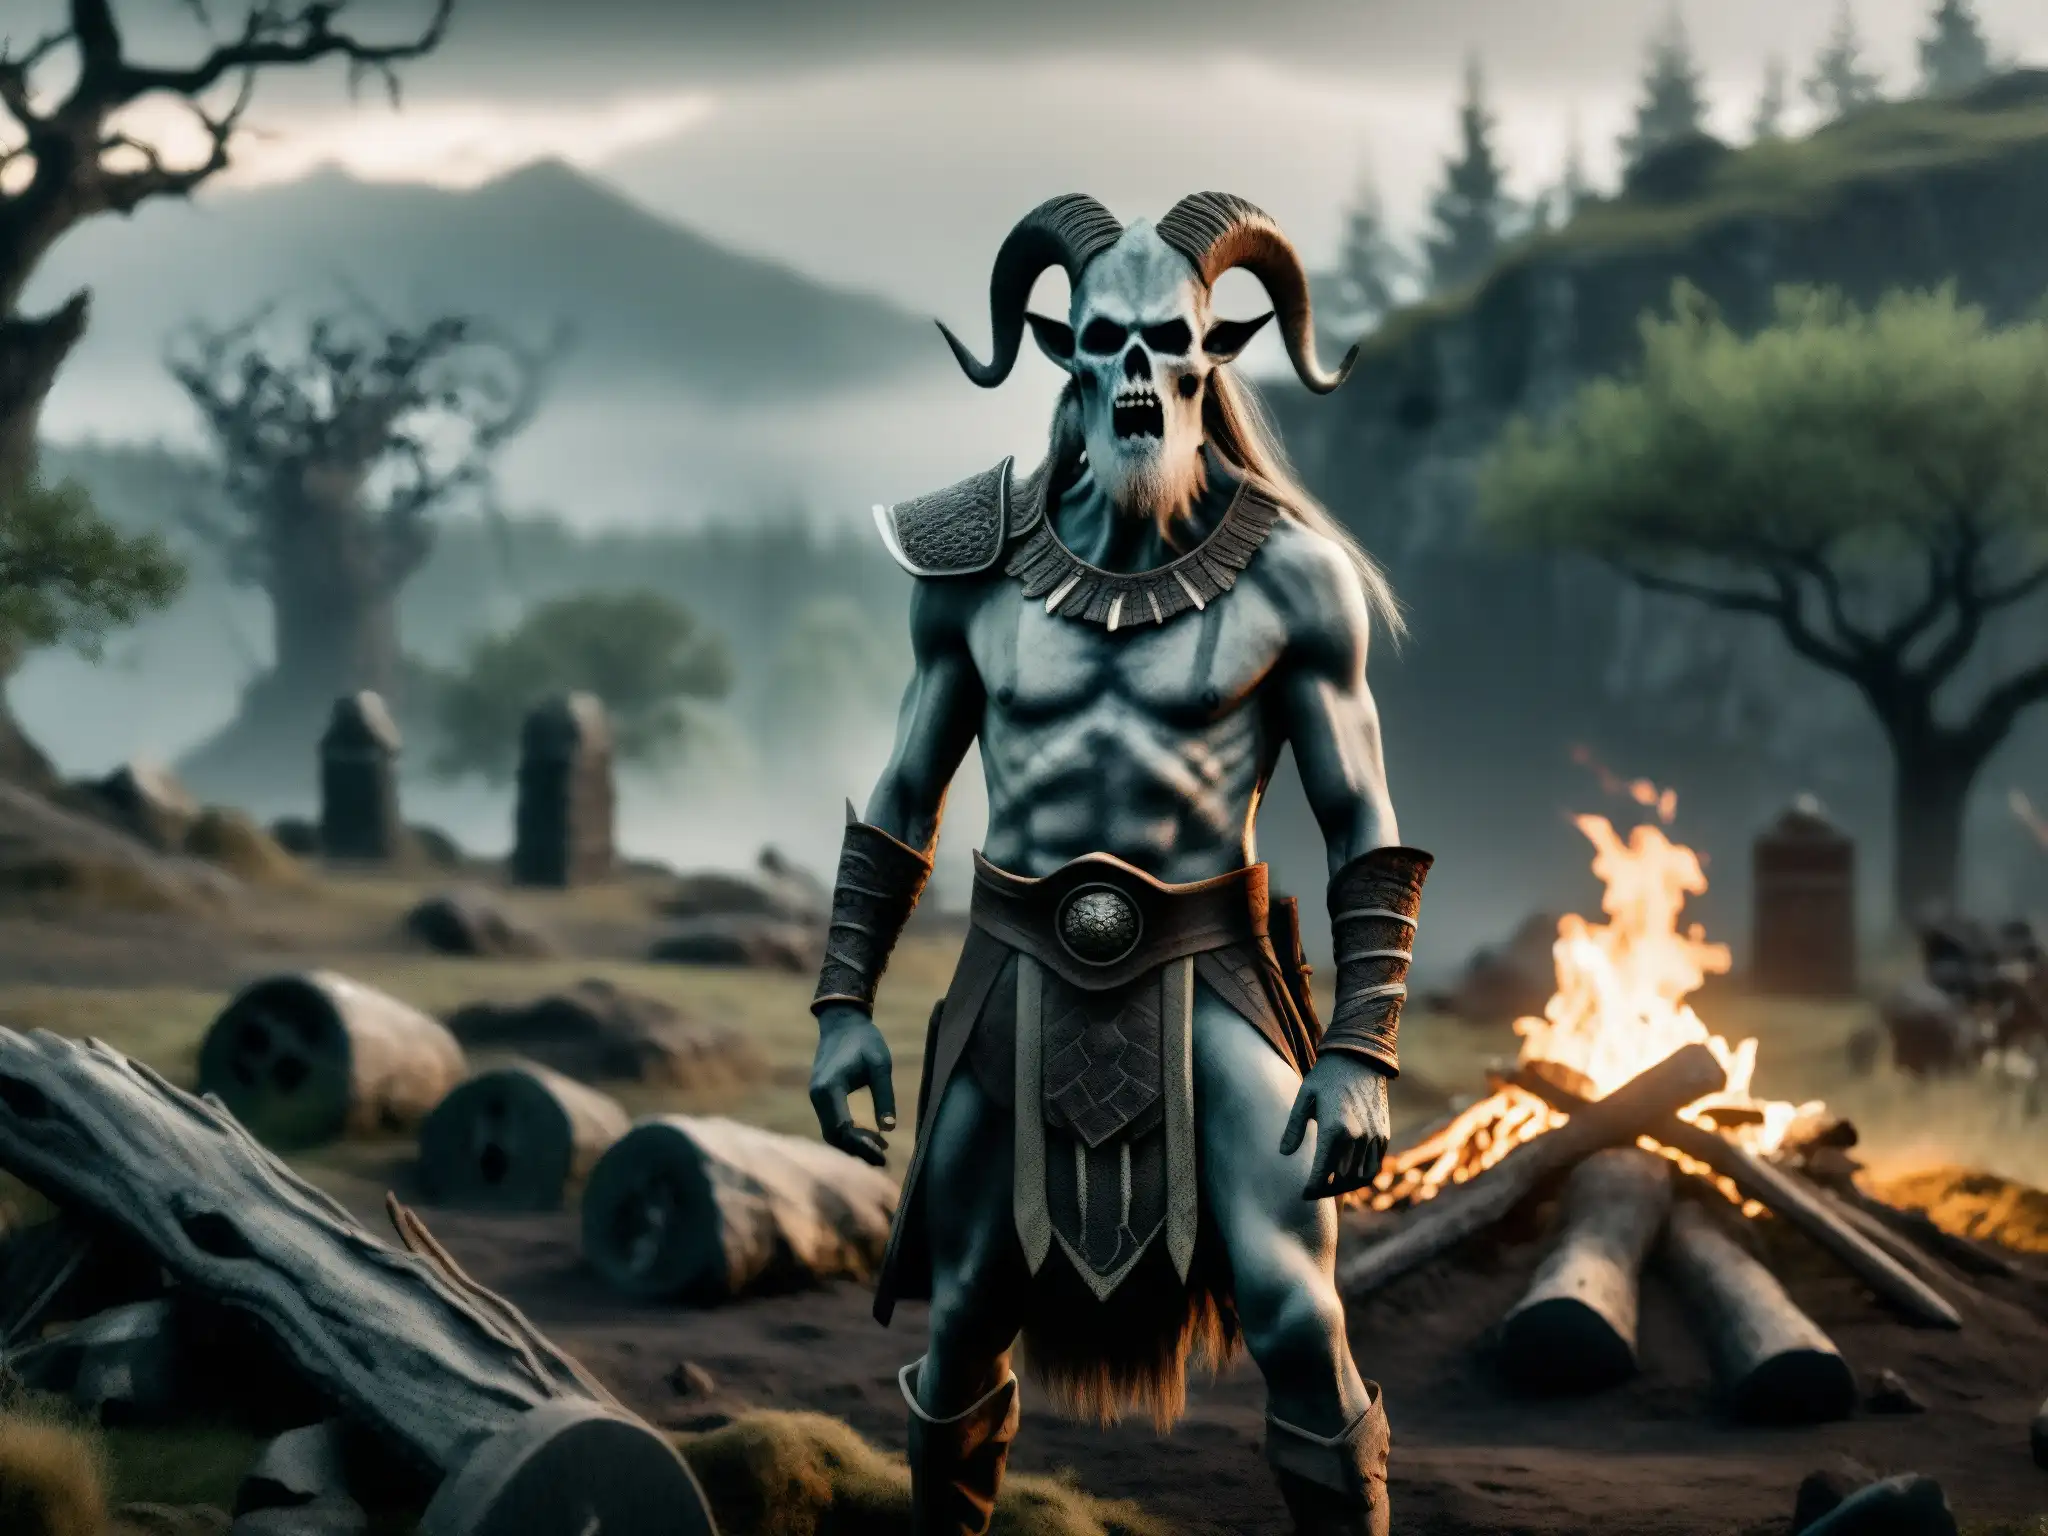 Imagen de un Draugr de la mitología nórdica emergiendo de un túmulo en un bosque neblinoso, con un aura espectral y expresión amenazante